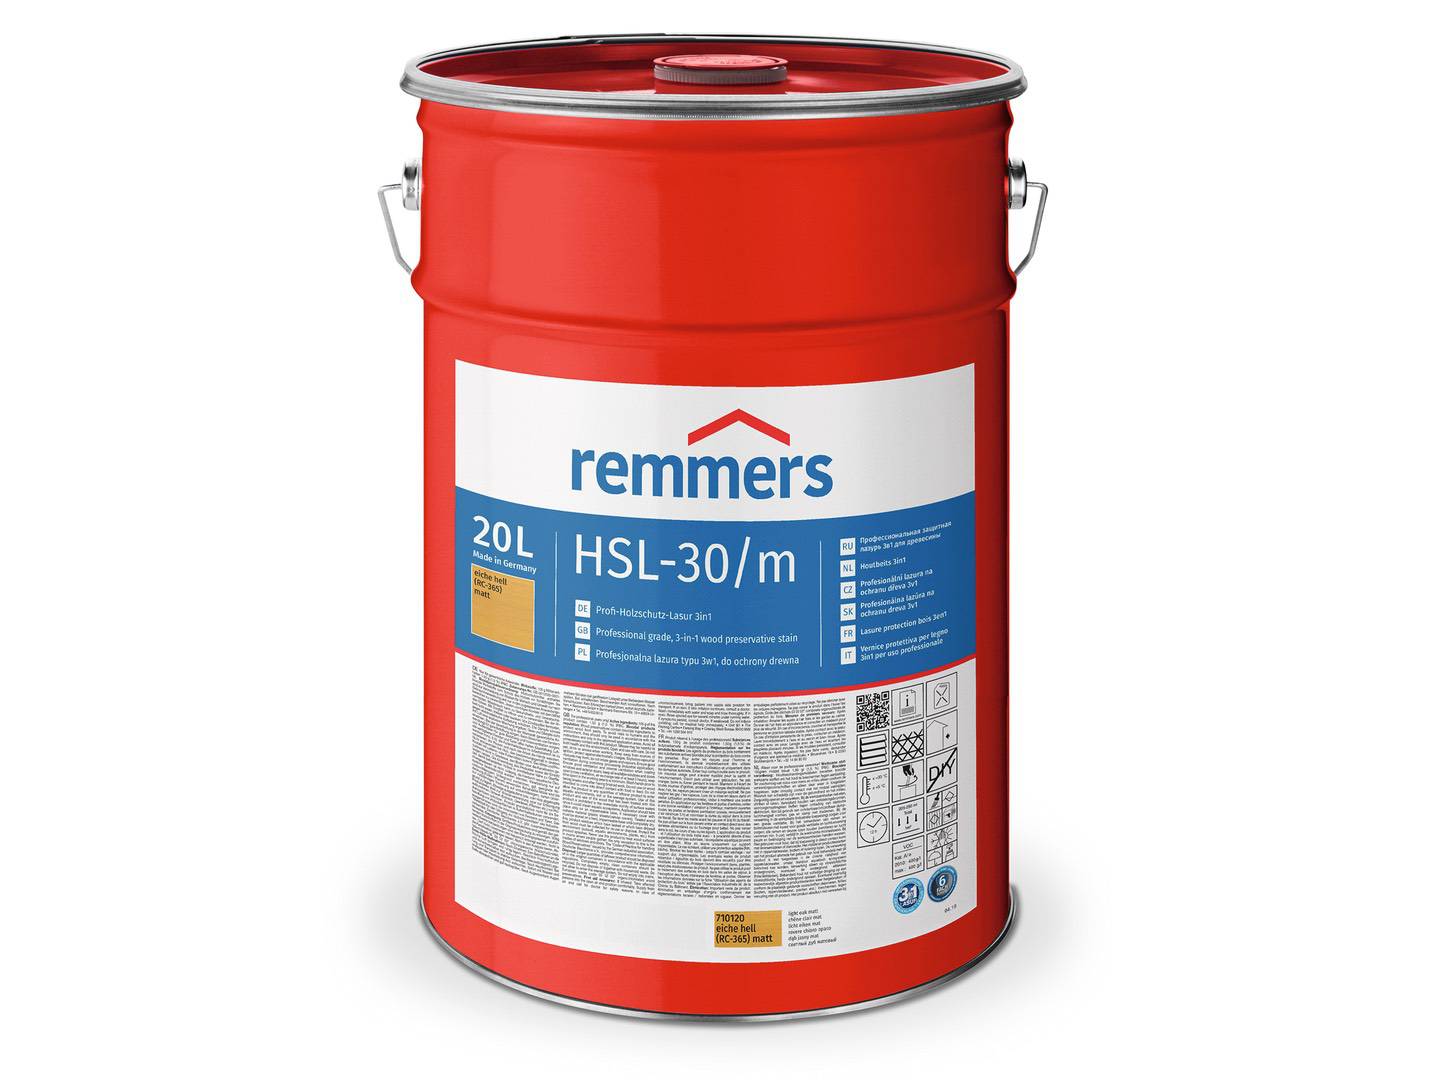 REMMERS HSL-30/m-Profi-Holzschutz-Lasur 3in1 nussbaum (RC-660) matt 2,50 l